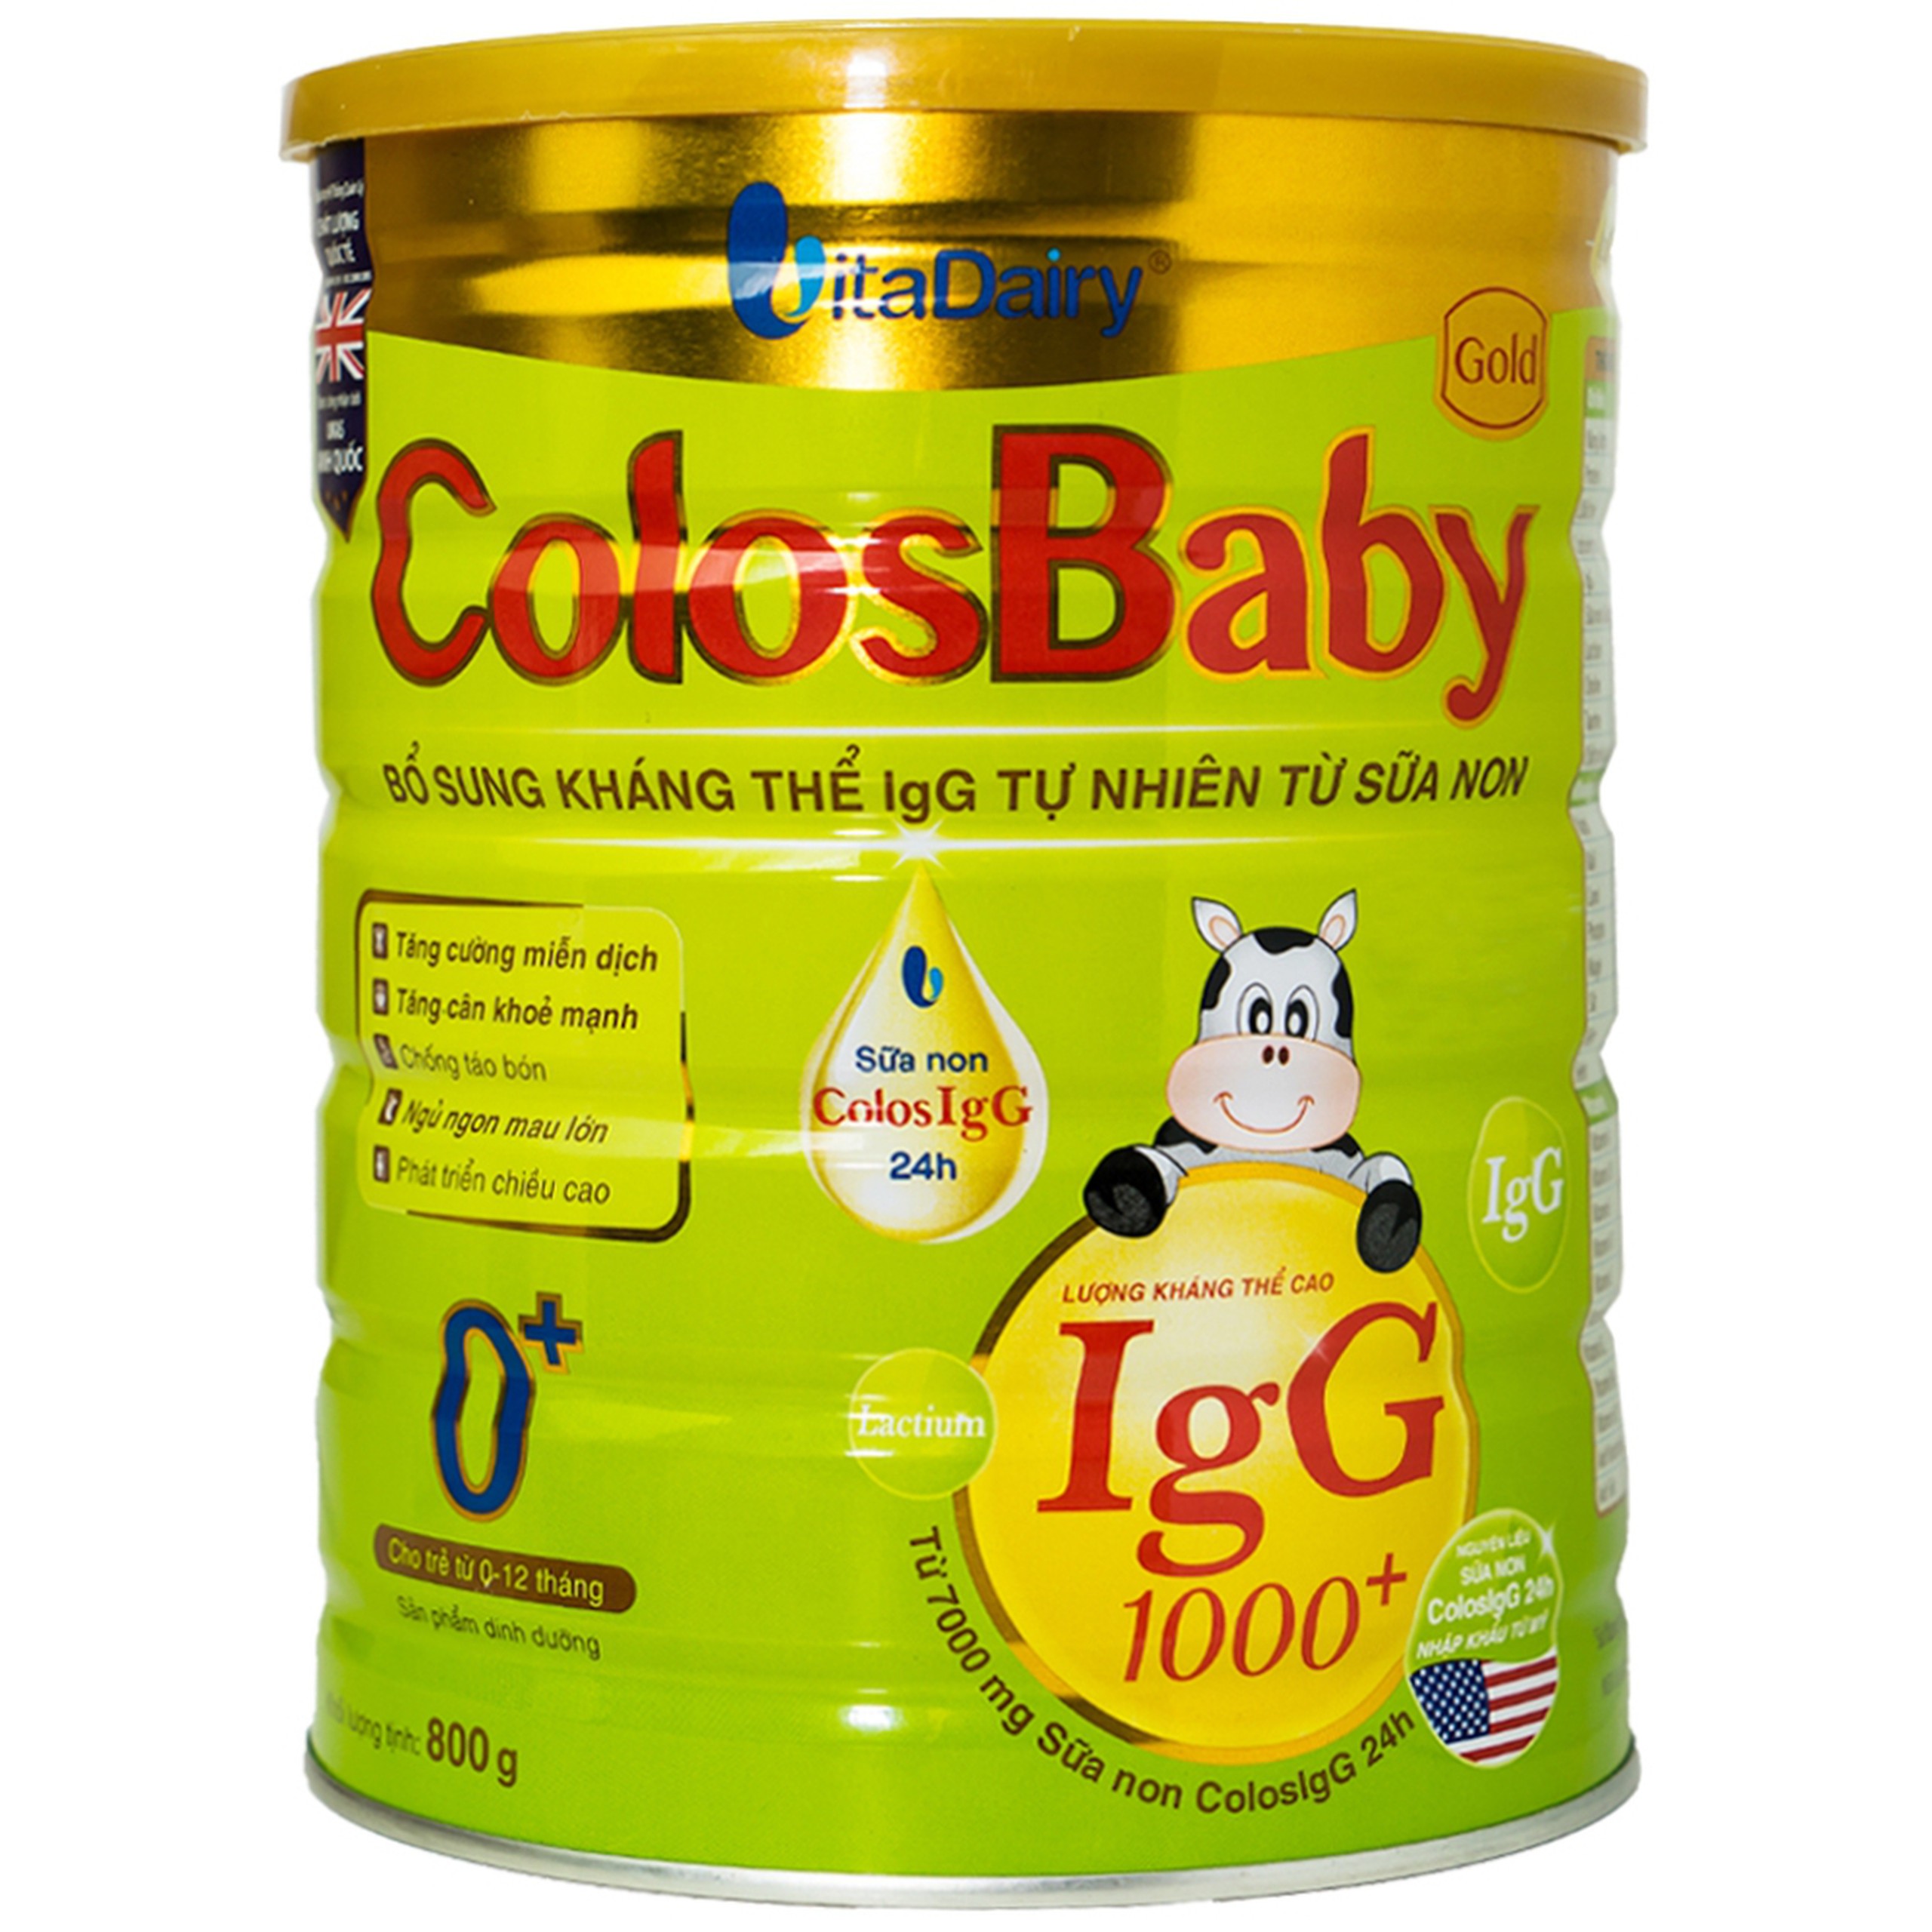 Sữa non ColosBaby Gold VitaDairy bổ sung kháng thể IgG tự nhiên cho trẻ từ 0 - 12 tháng (800g)